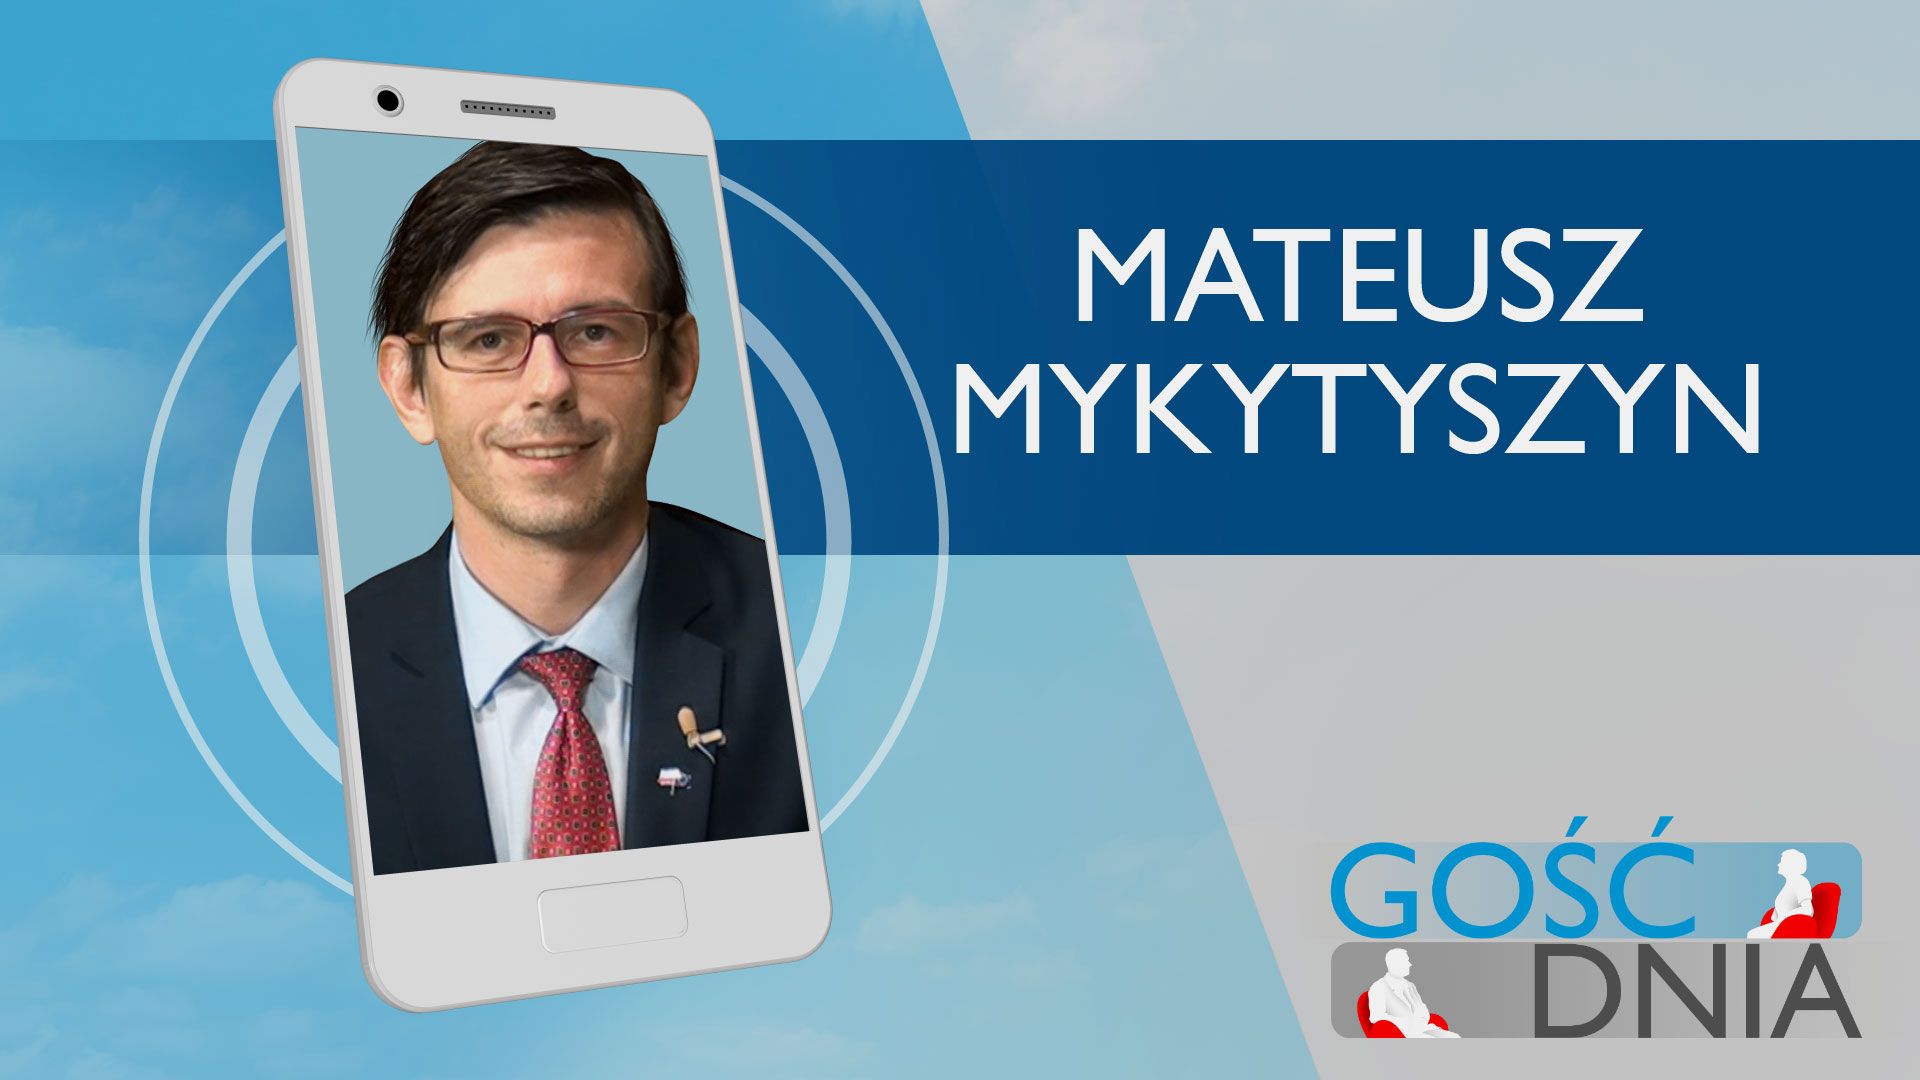 Gość Dnia - Mateusz Mykytyszyn